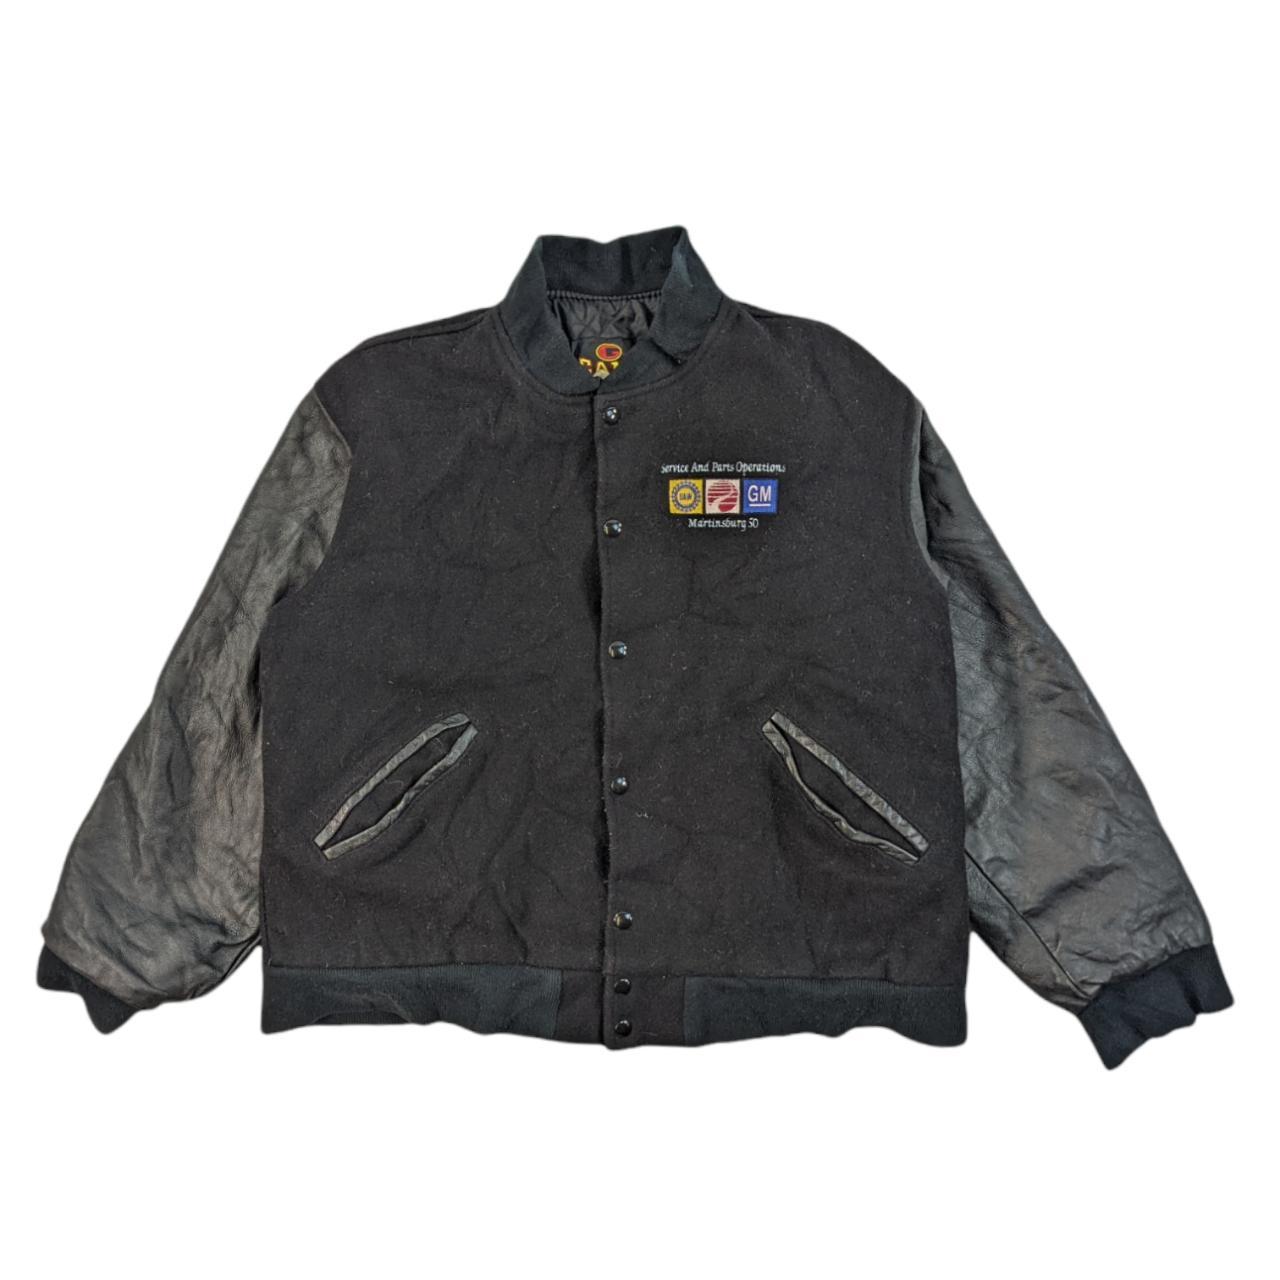 Vintage black leather varsity jacket (L) Size:... - Depop